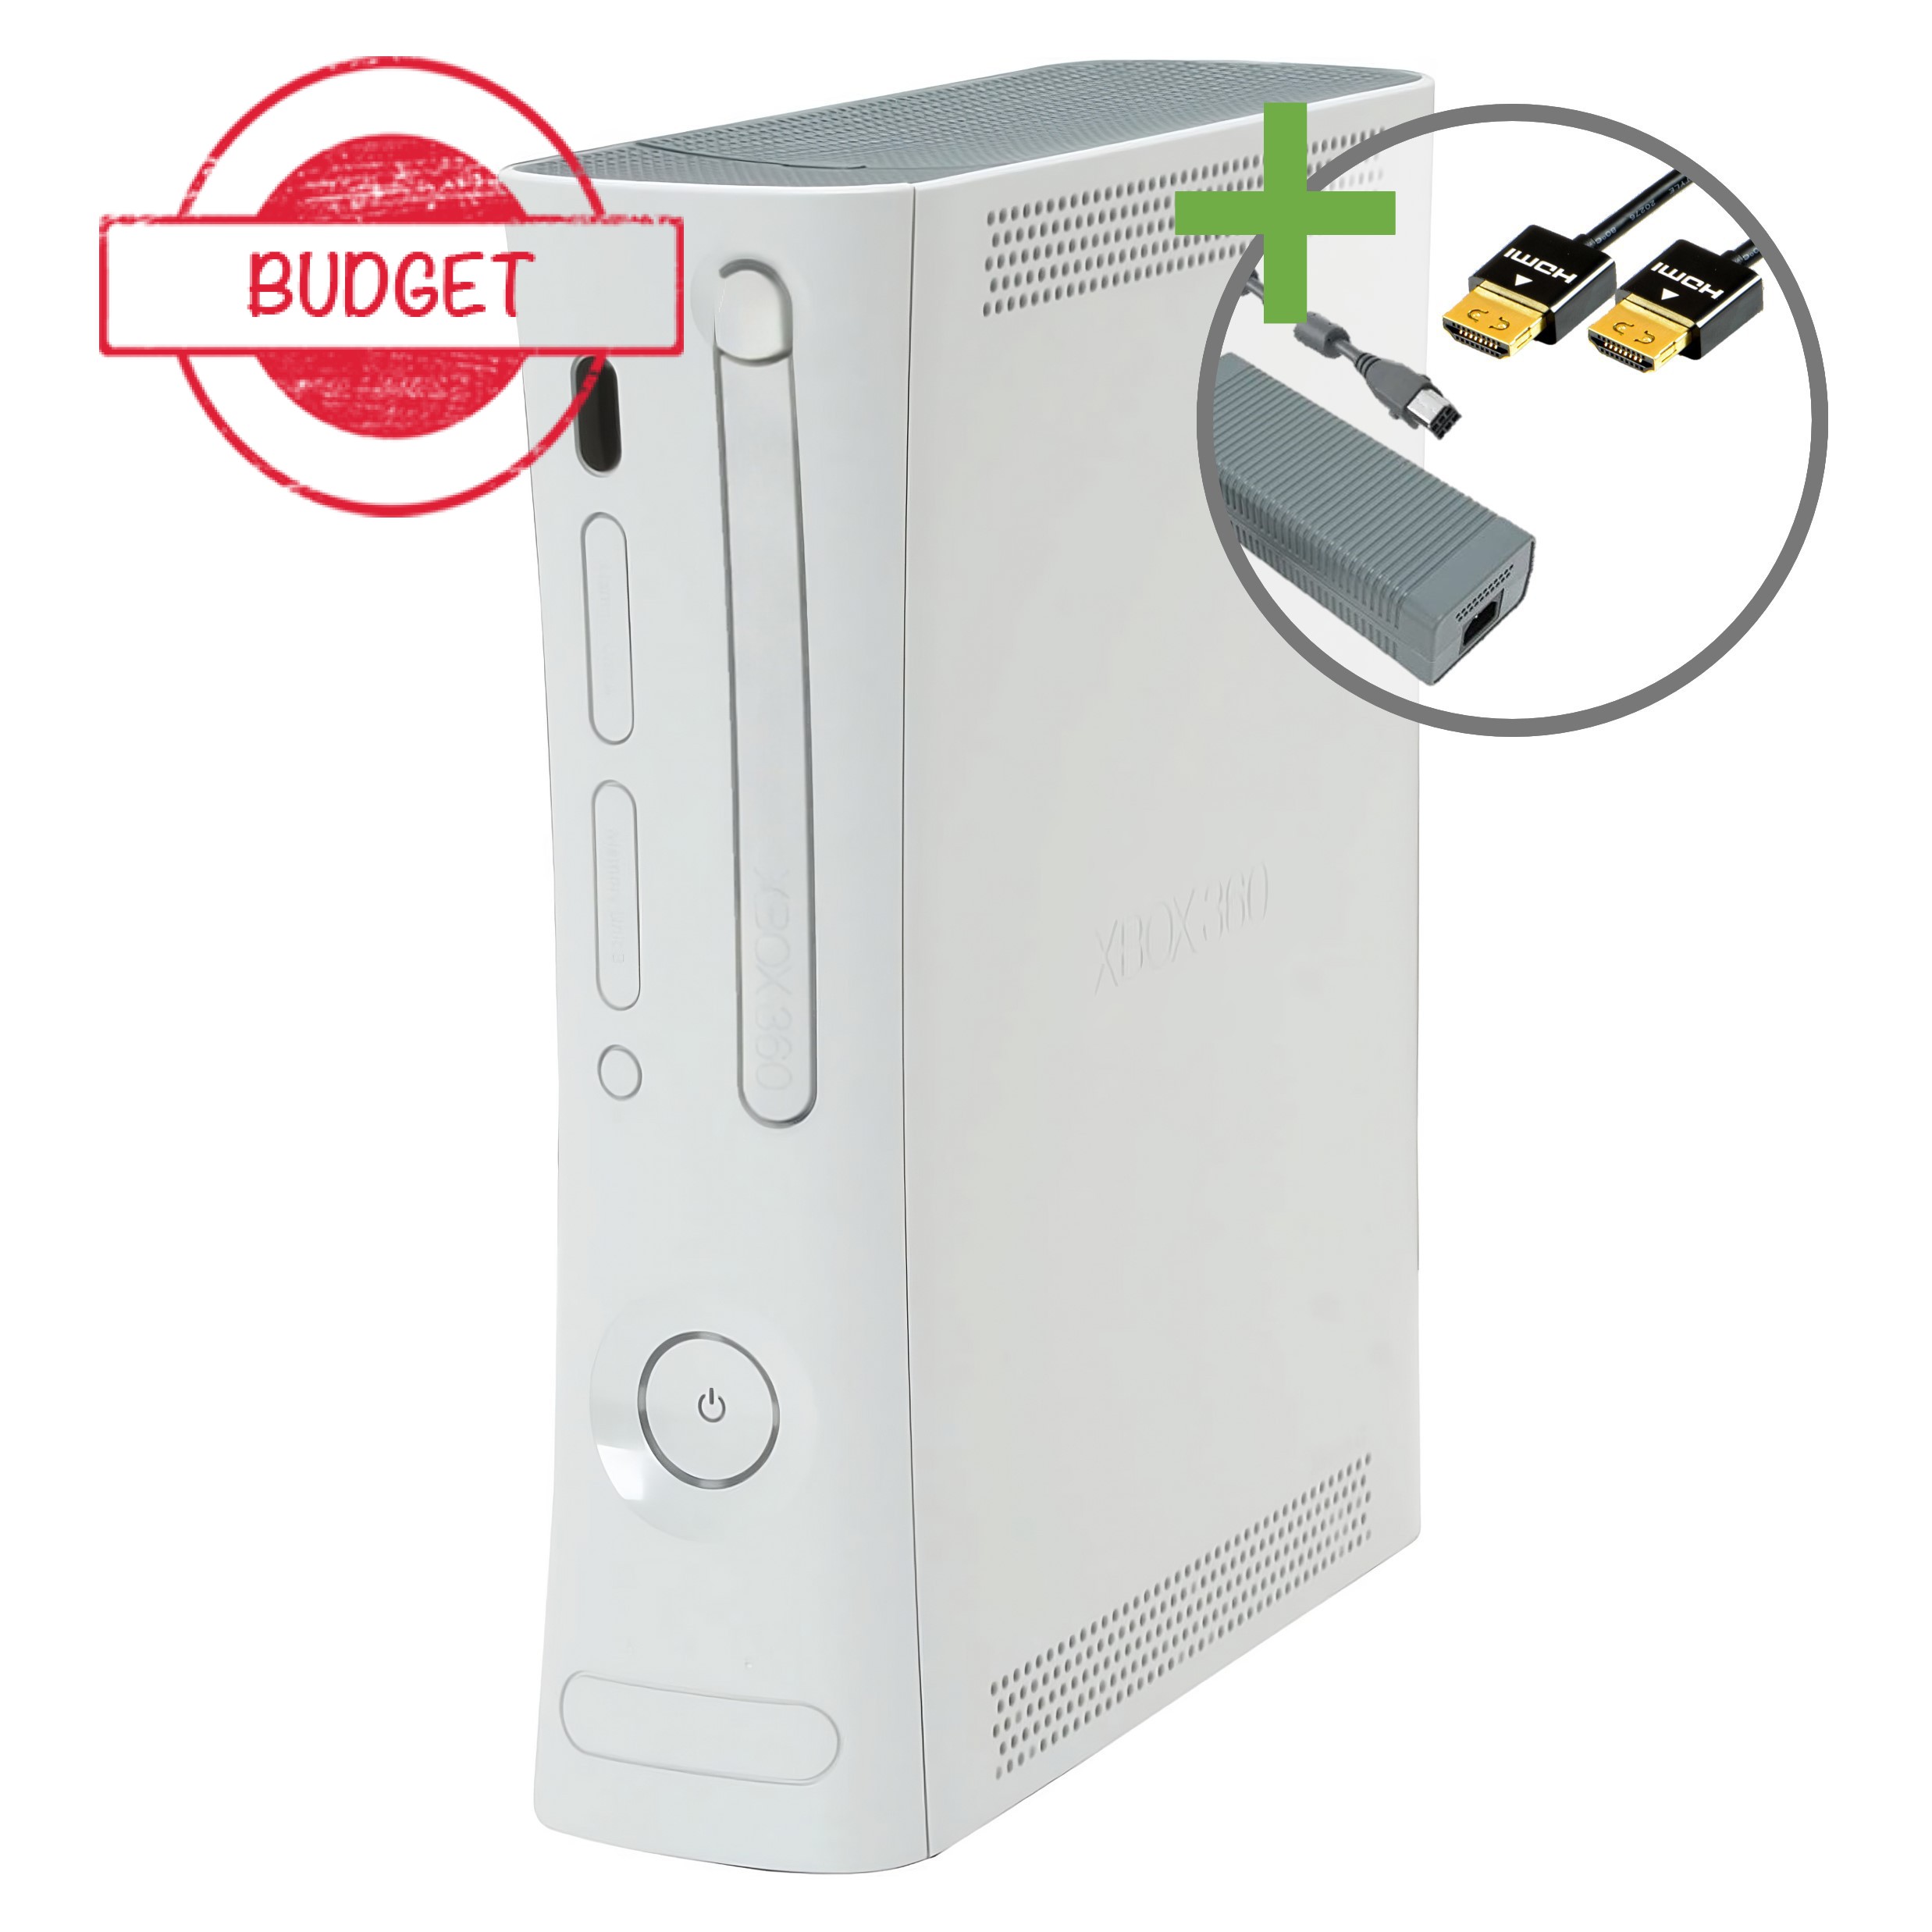 Microsoft Xbox 360 Arcade Console (HDMI) - Budget - Xbox 360 Hardware